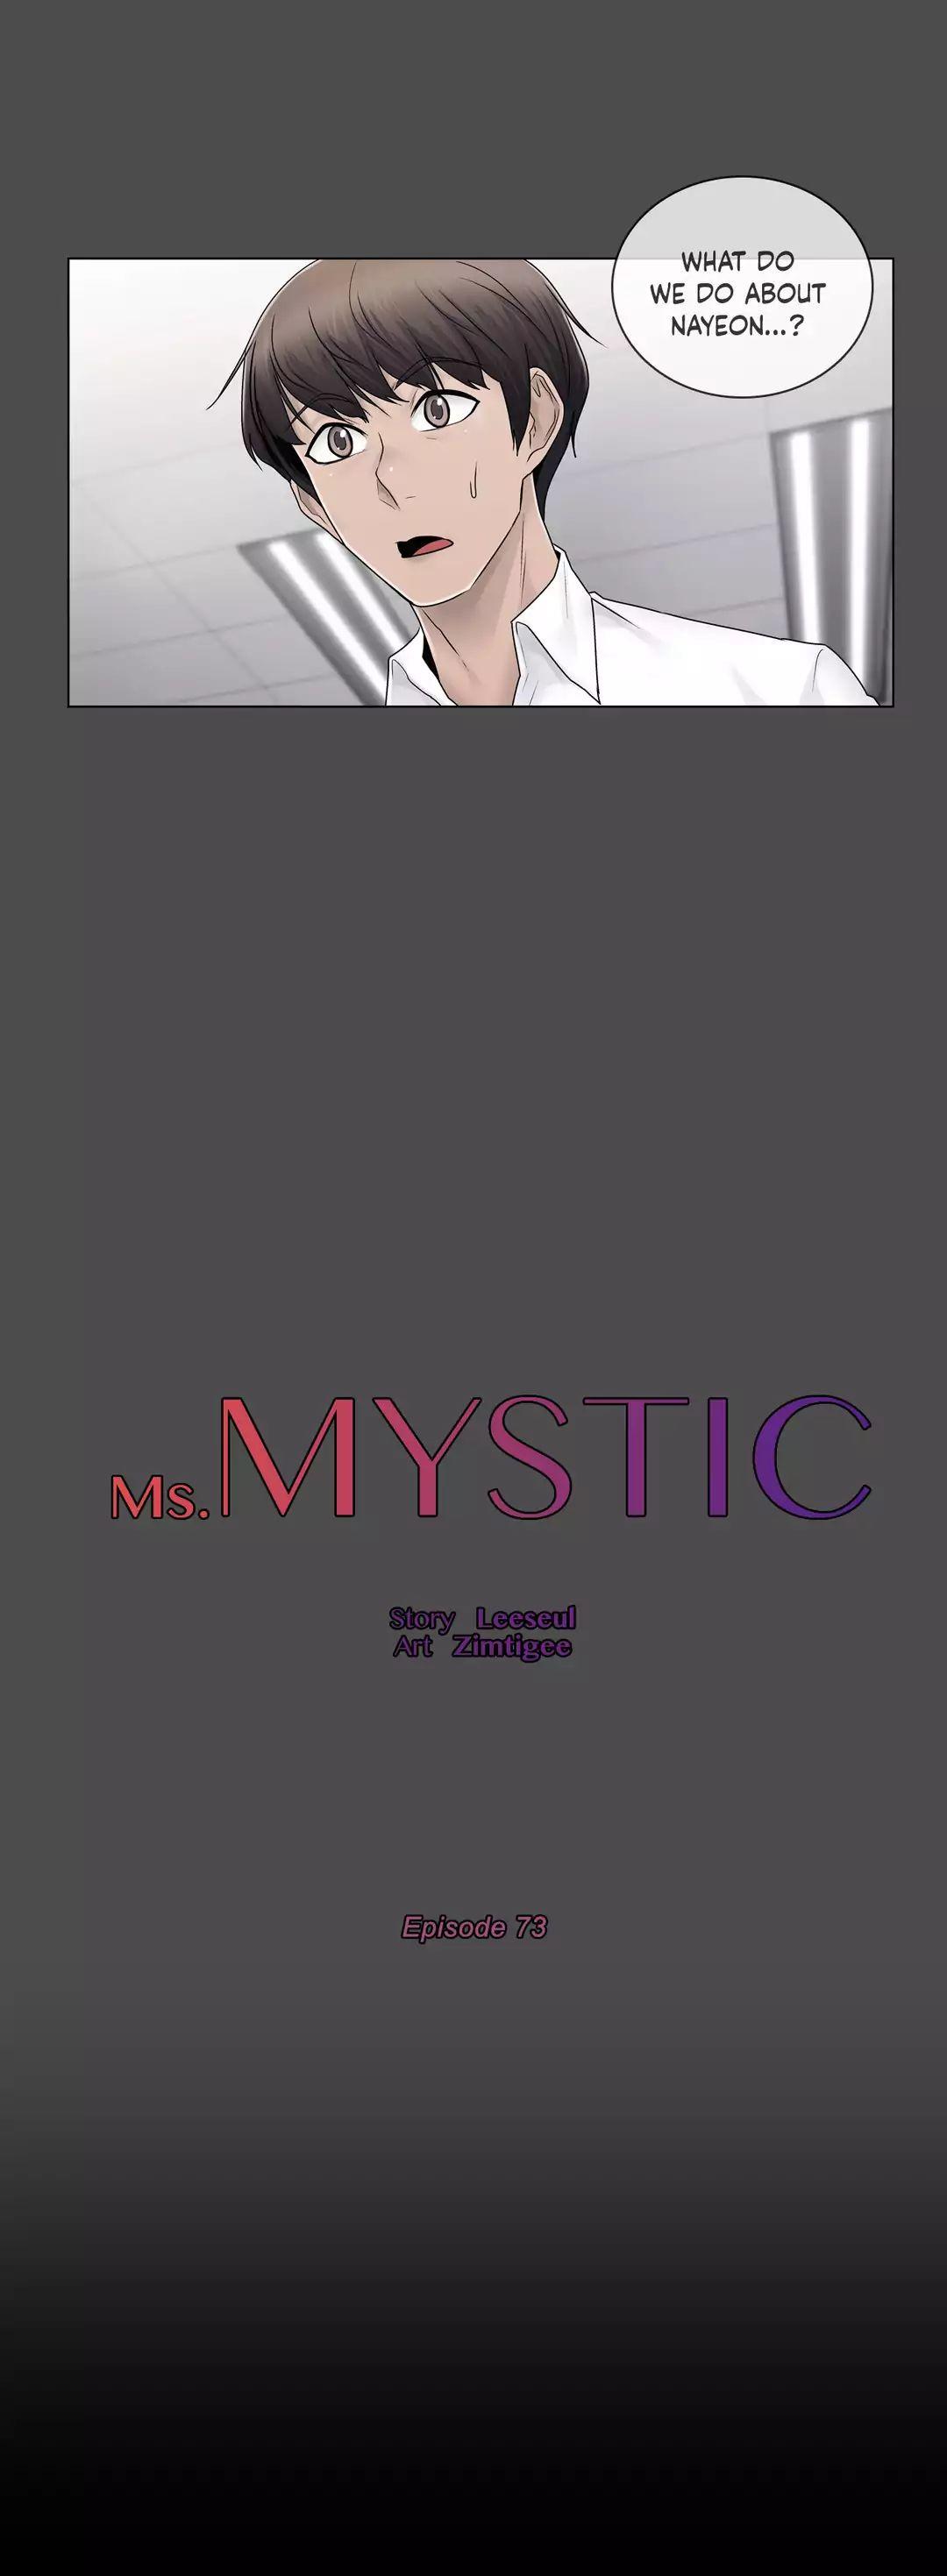 Watch image manhwa Miss Mystic - Chapter 73 - qeb723VVKdJTPJ2 - ManhwaXX.net